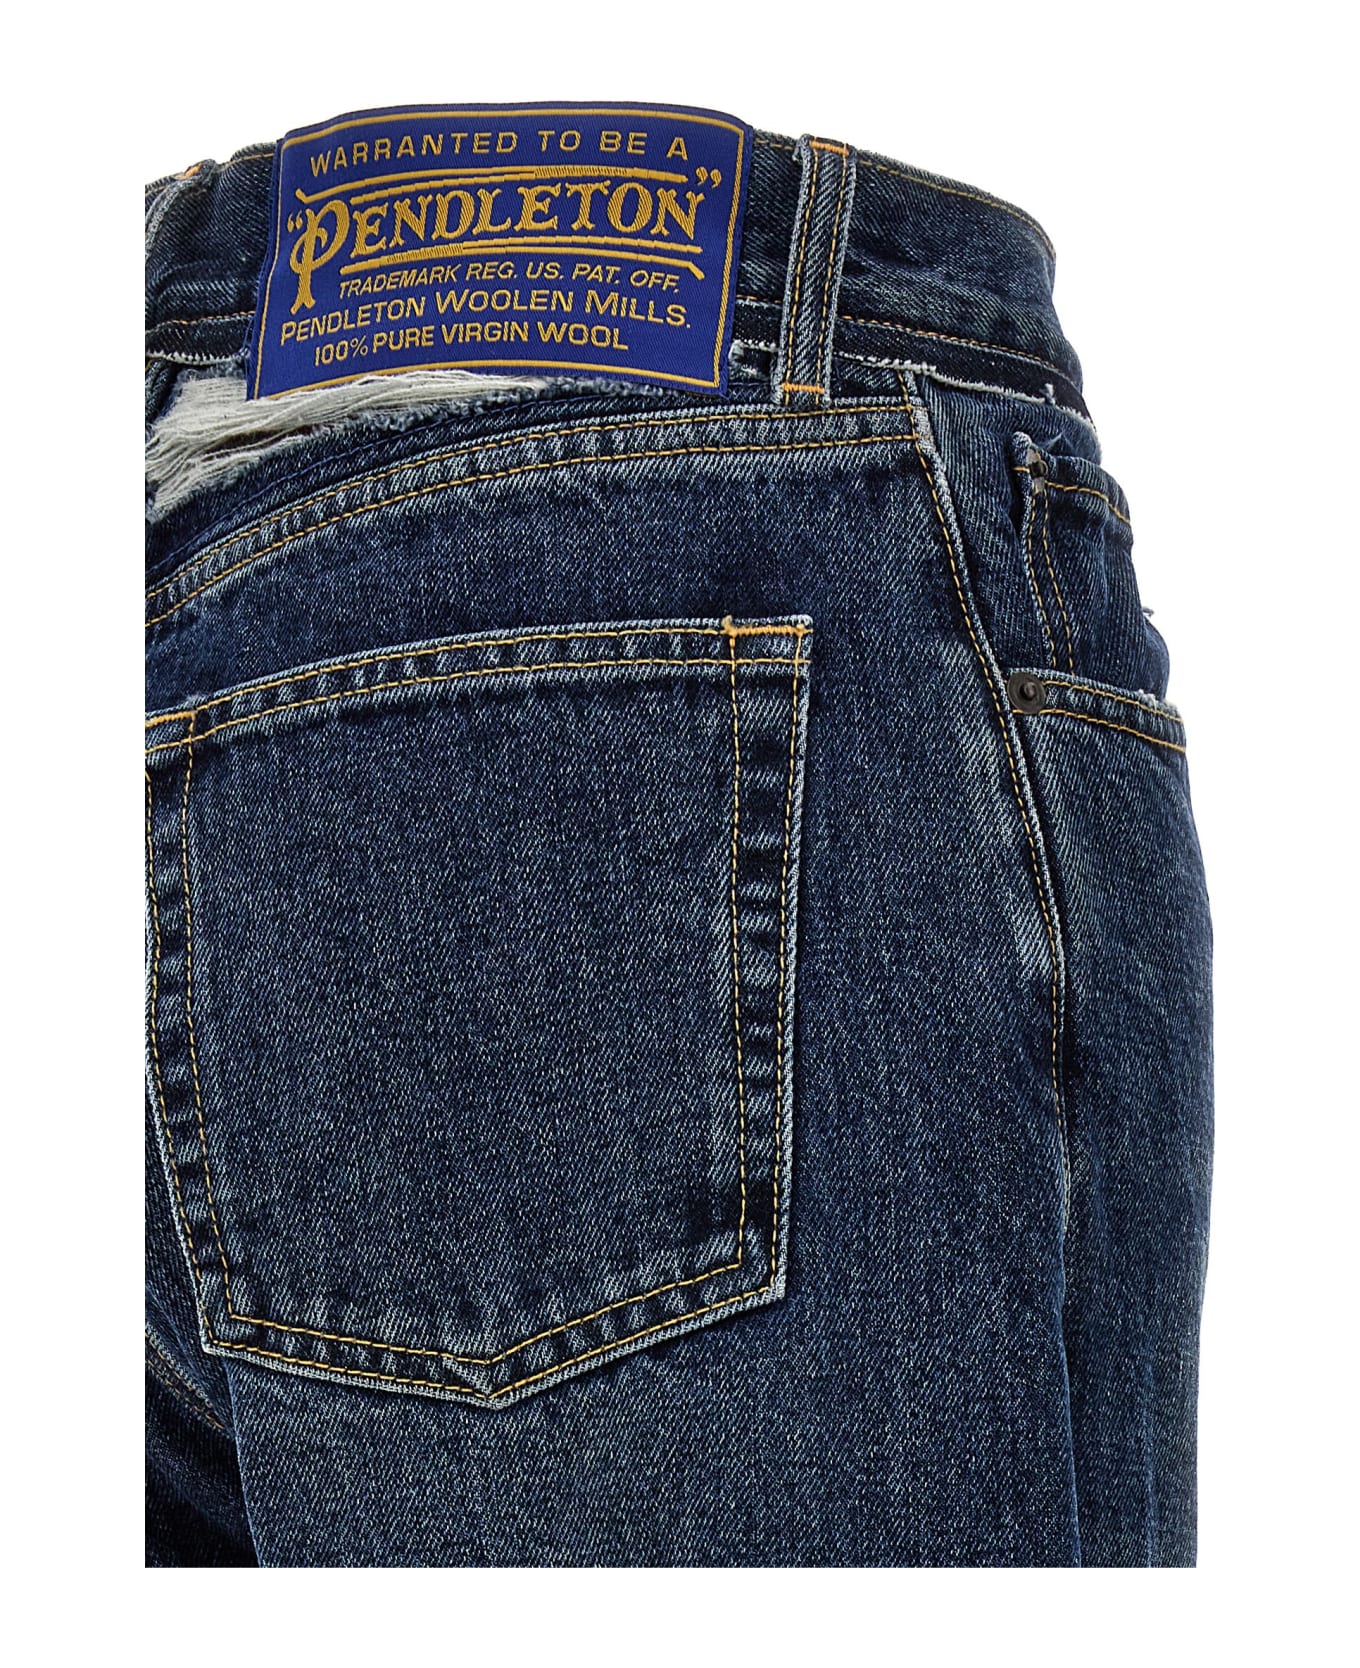 Maison Margiela Pendleton Jeans - Blue